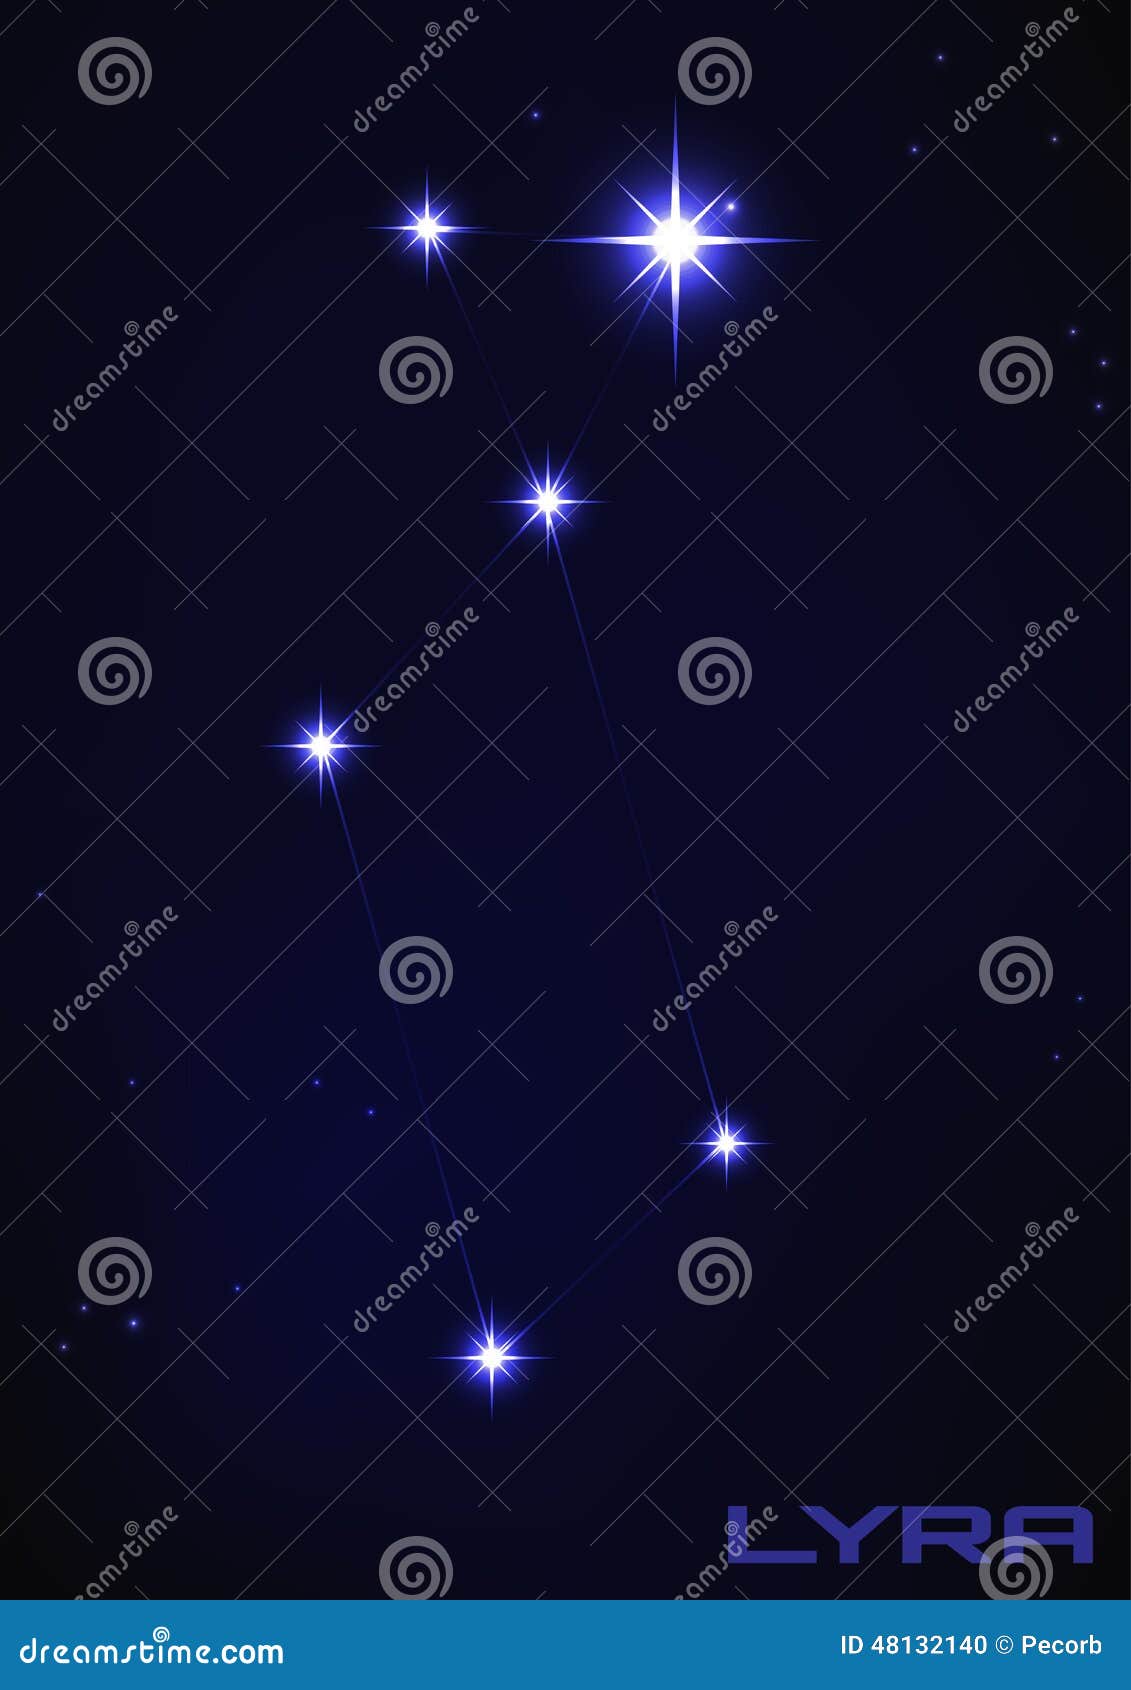 lyra constellation